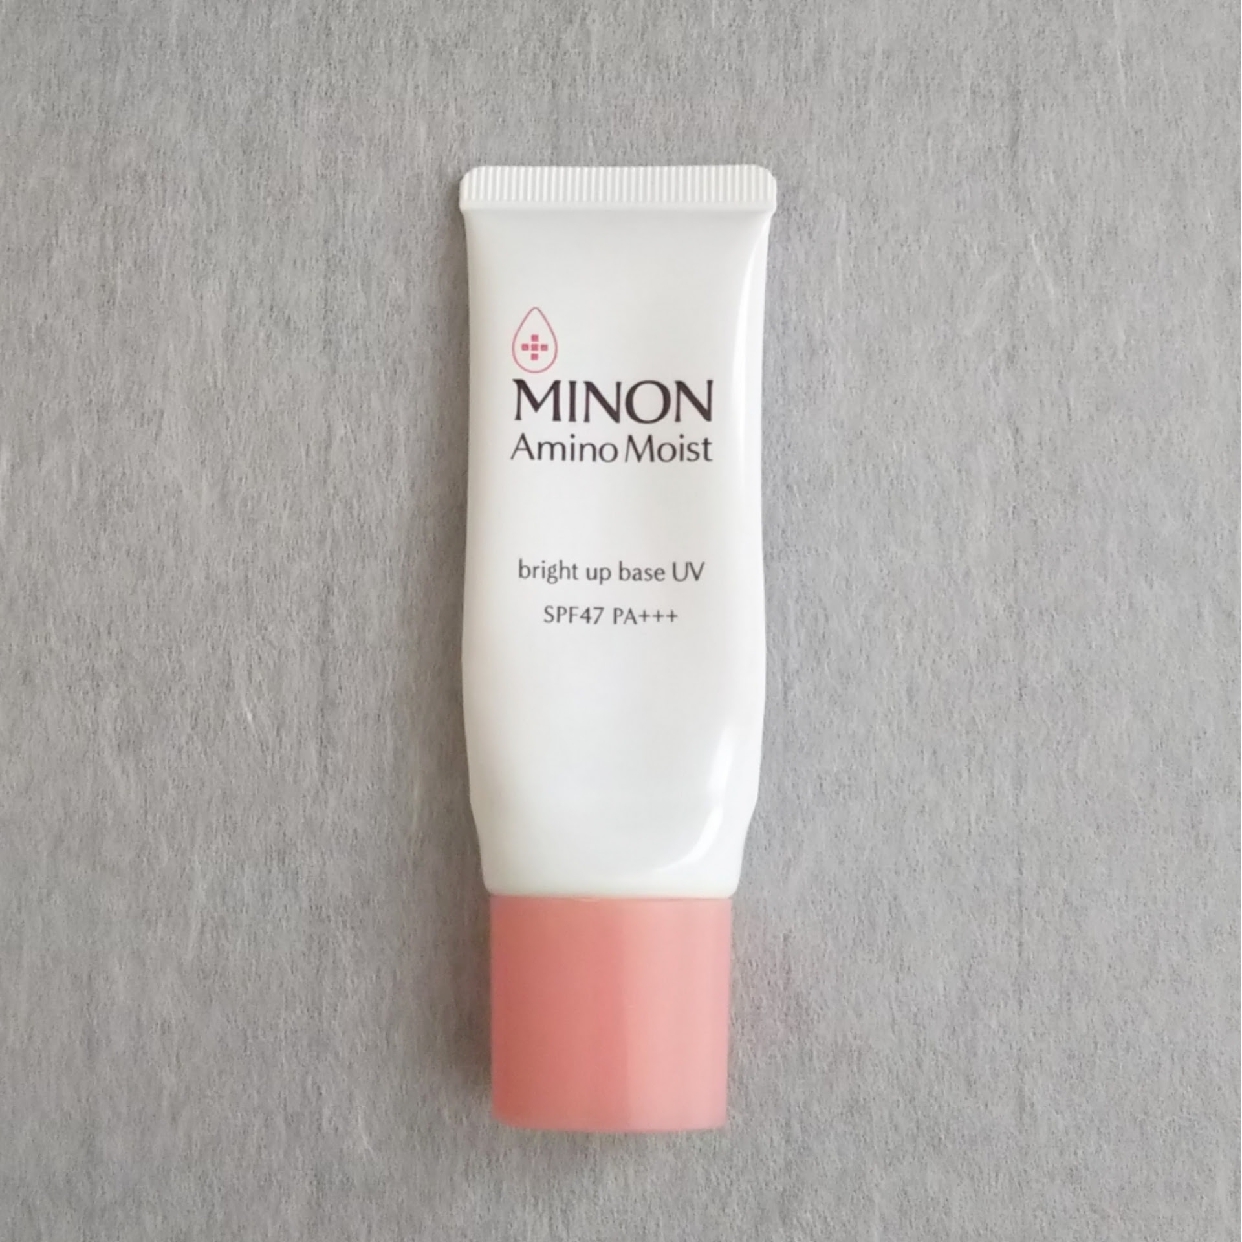 MINON(ミノン) アミノモイスト ブライトアップベース UVの良い点・メリットに関するmaikoさんの口コミ画像1